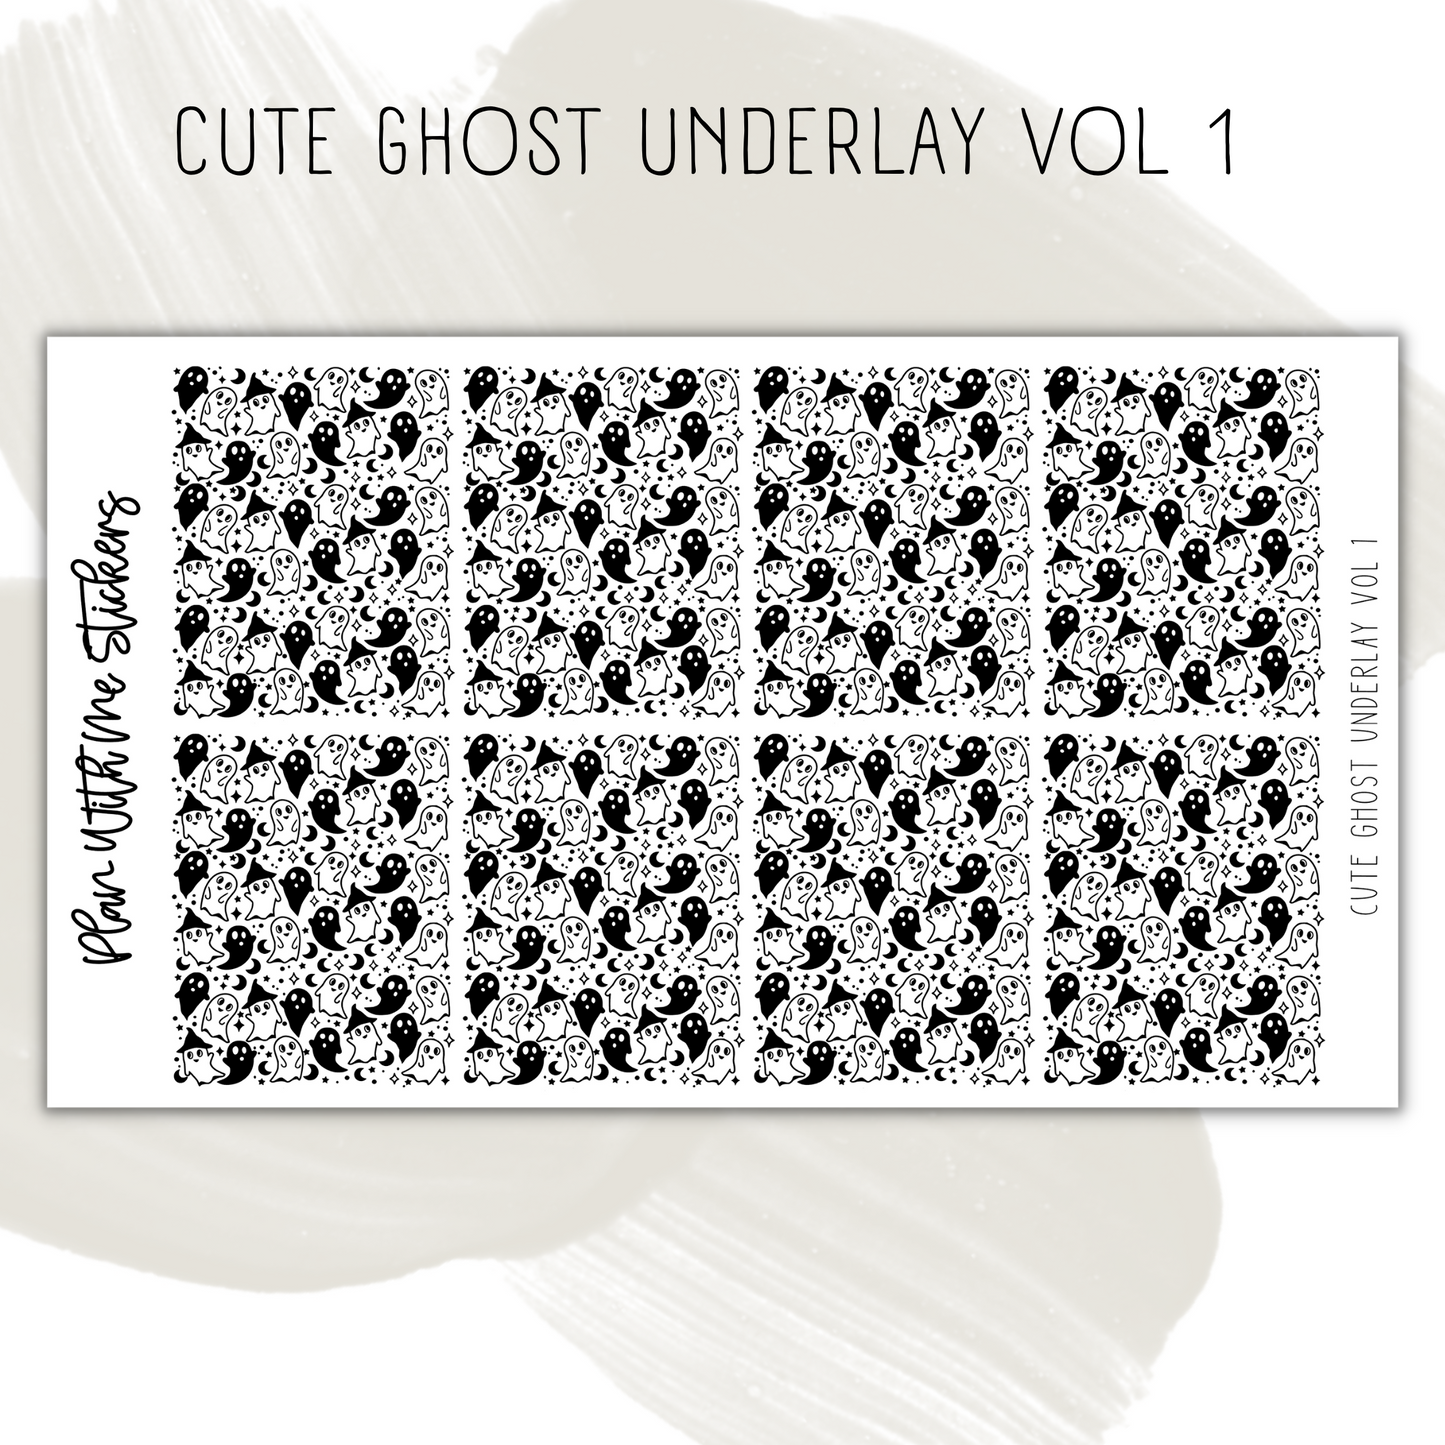 Cute Ghost Underlay Vol 1